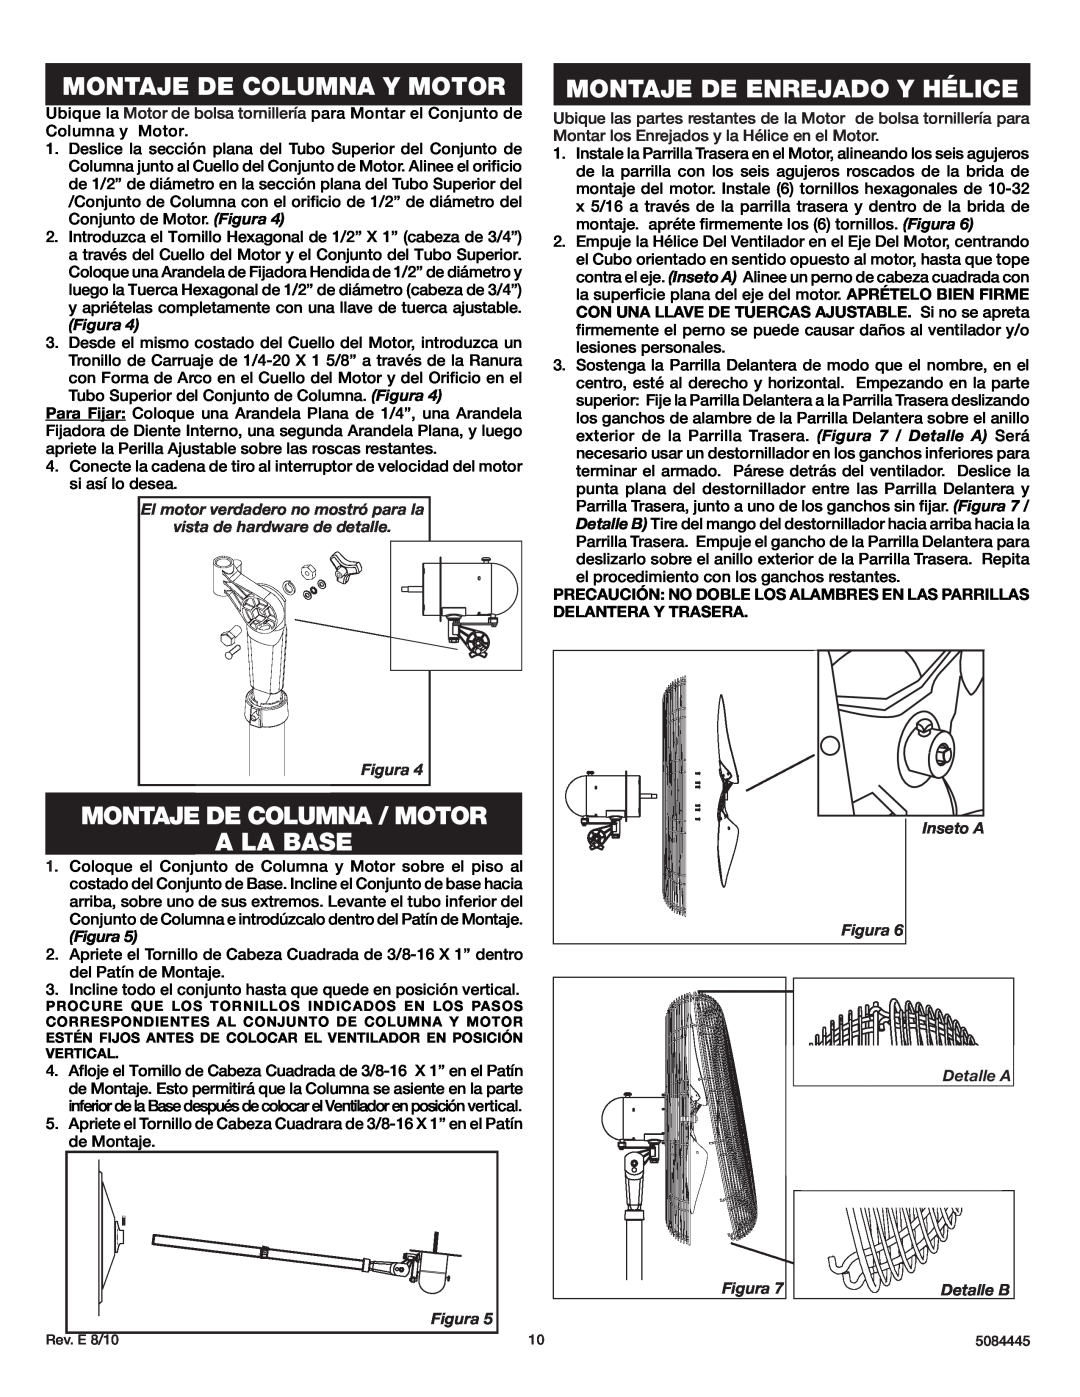 Lasko 3138 instruction sheet Montaje De Columna Y Motor, Montaje De Columna / Motor A La Base, Montaje De Enrejado Y Hélice 